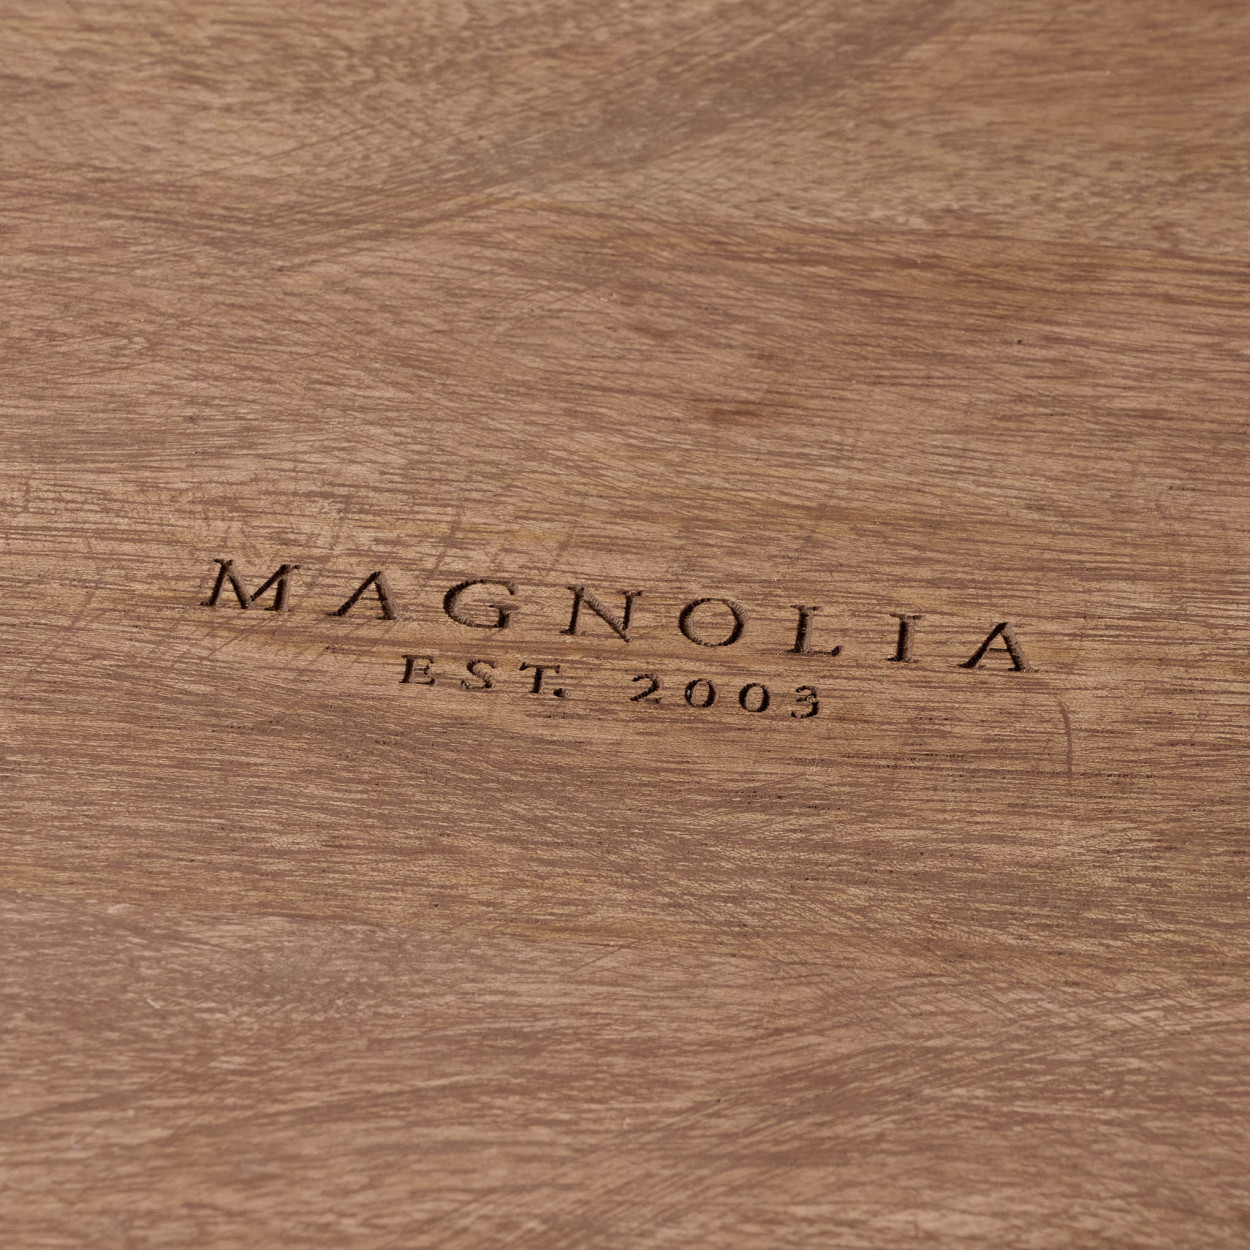 Magnolia Antiqued Wood Storage Box - Magnolia